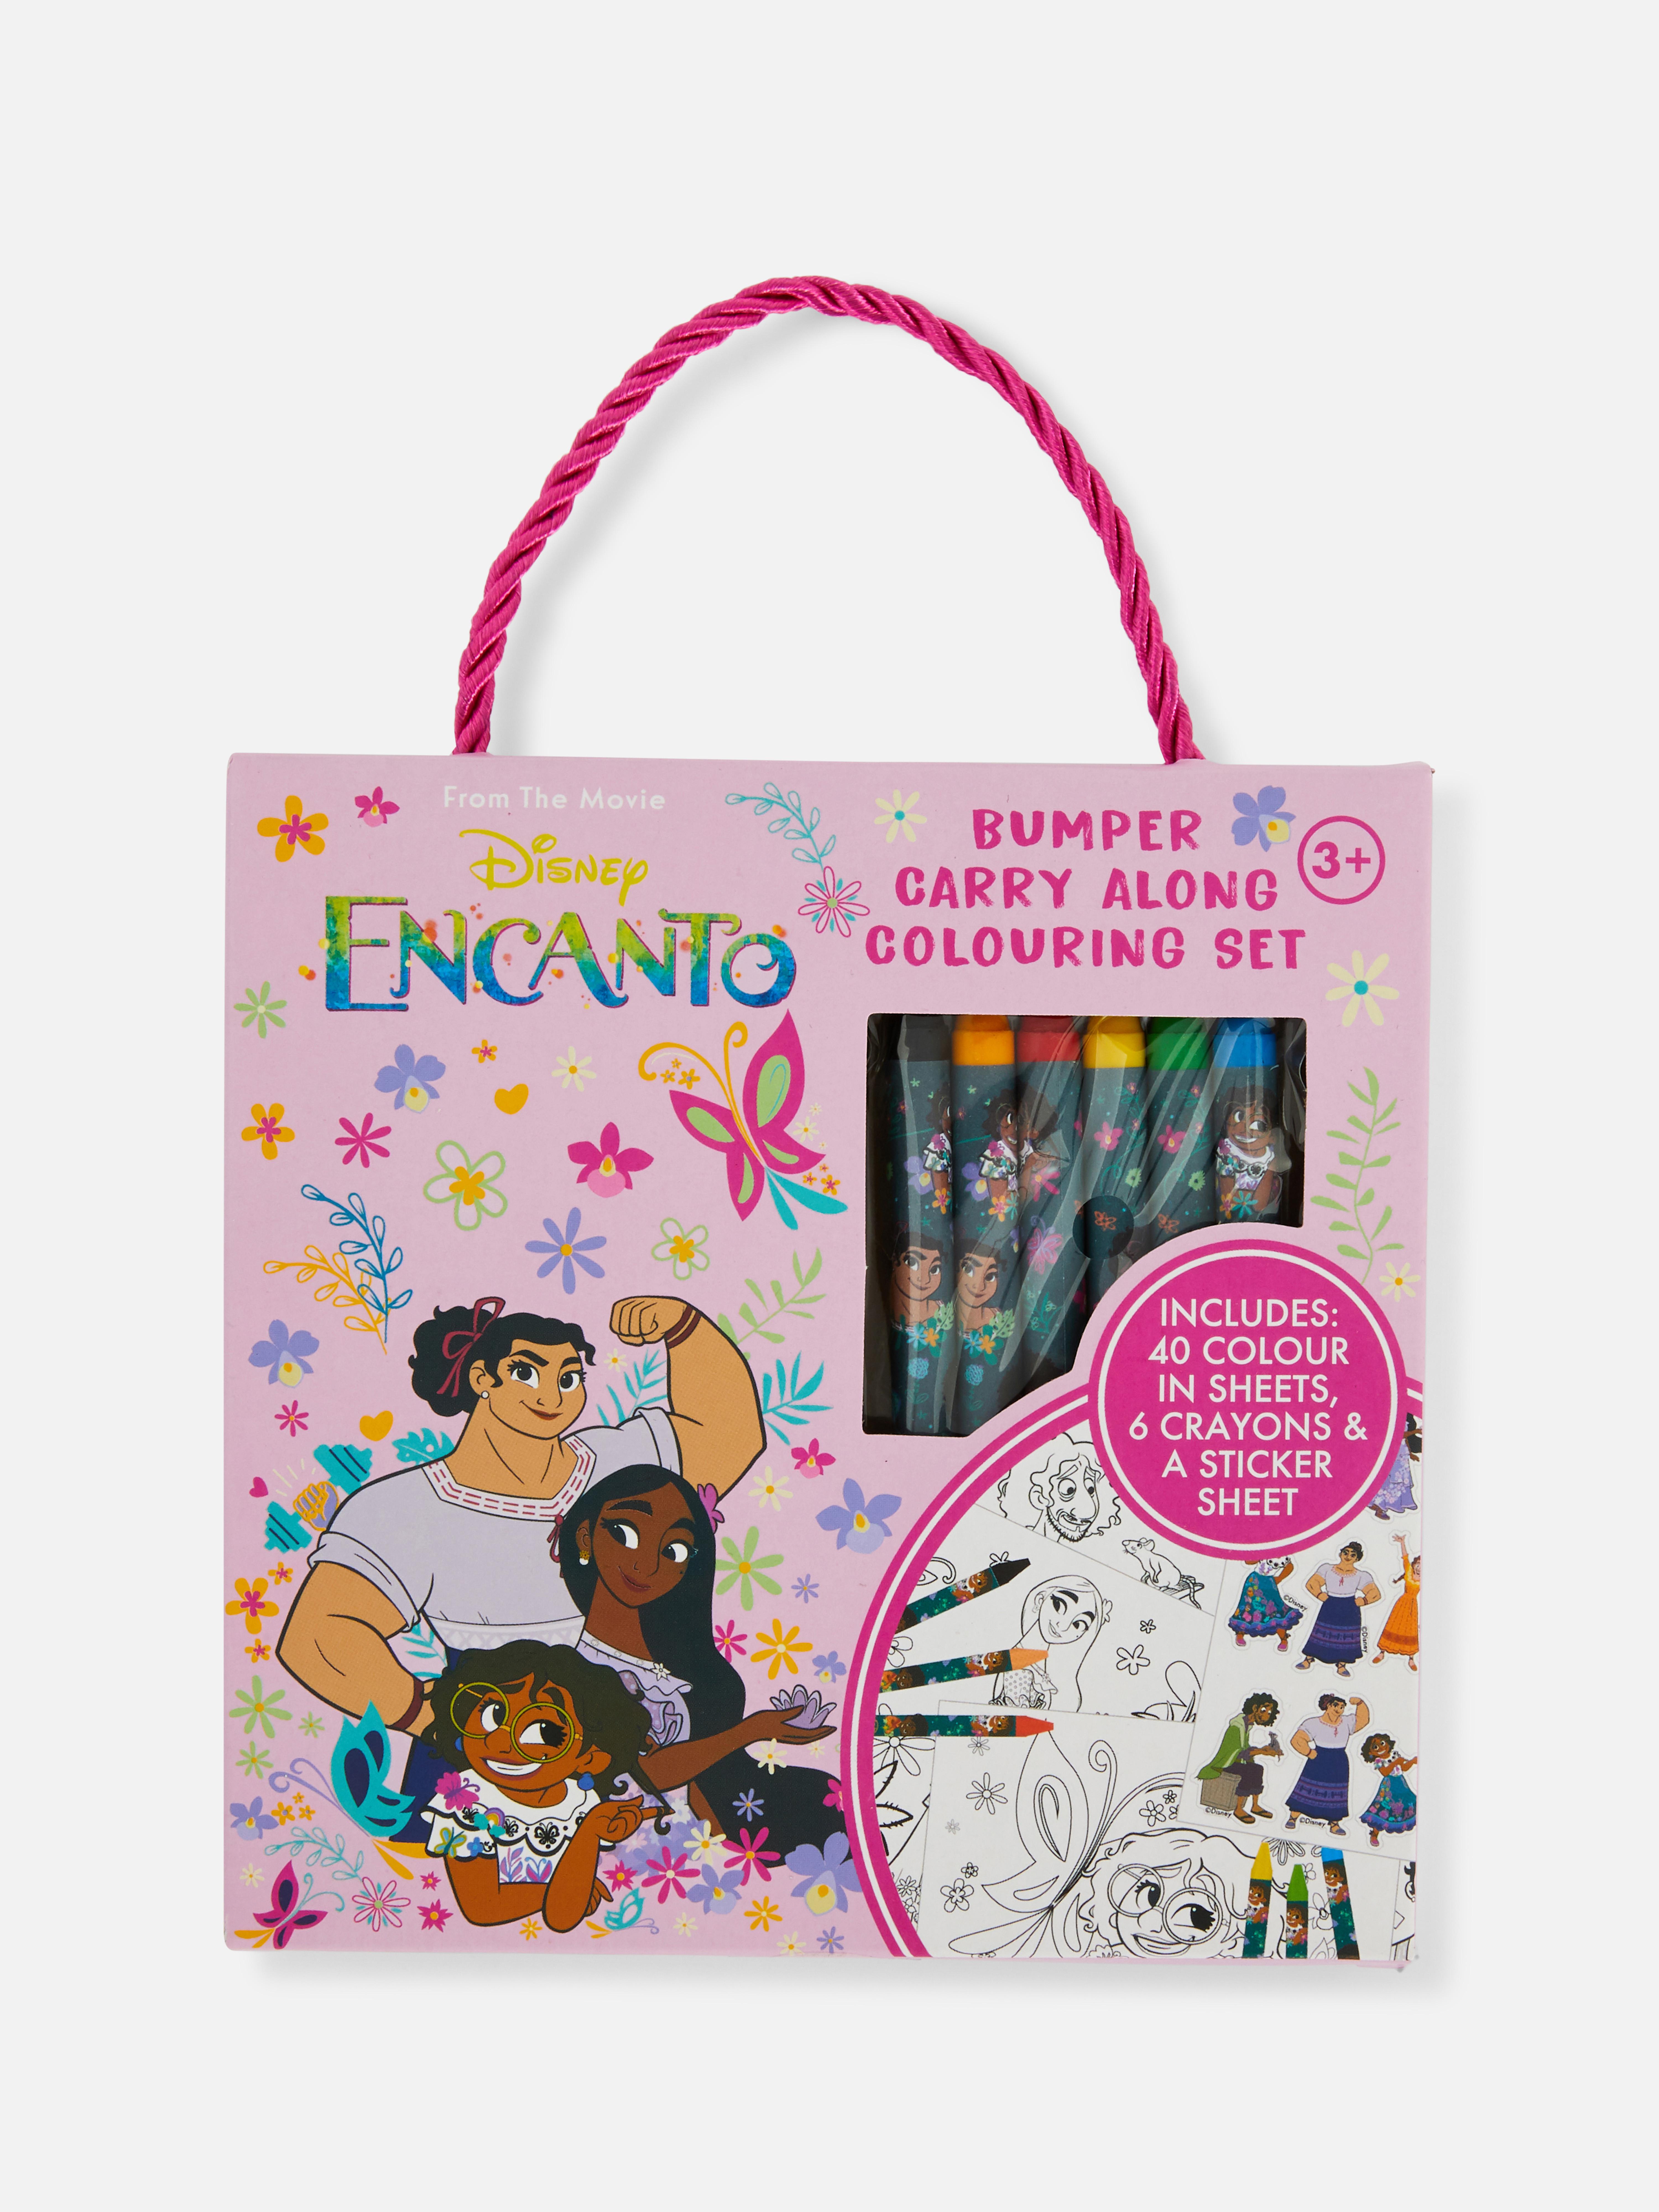 Disney's Encanto Bumper Carry Along Colouring Set